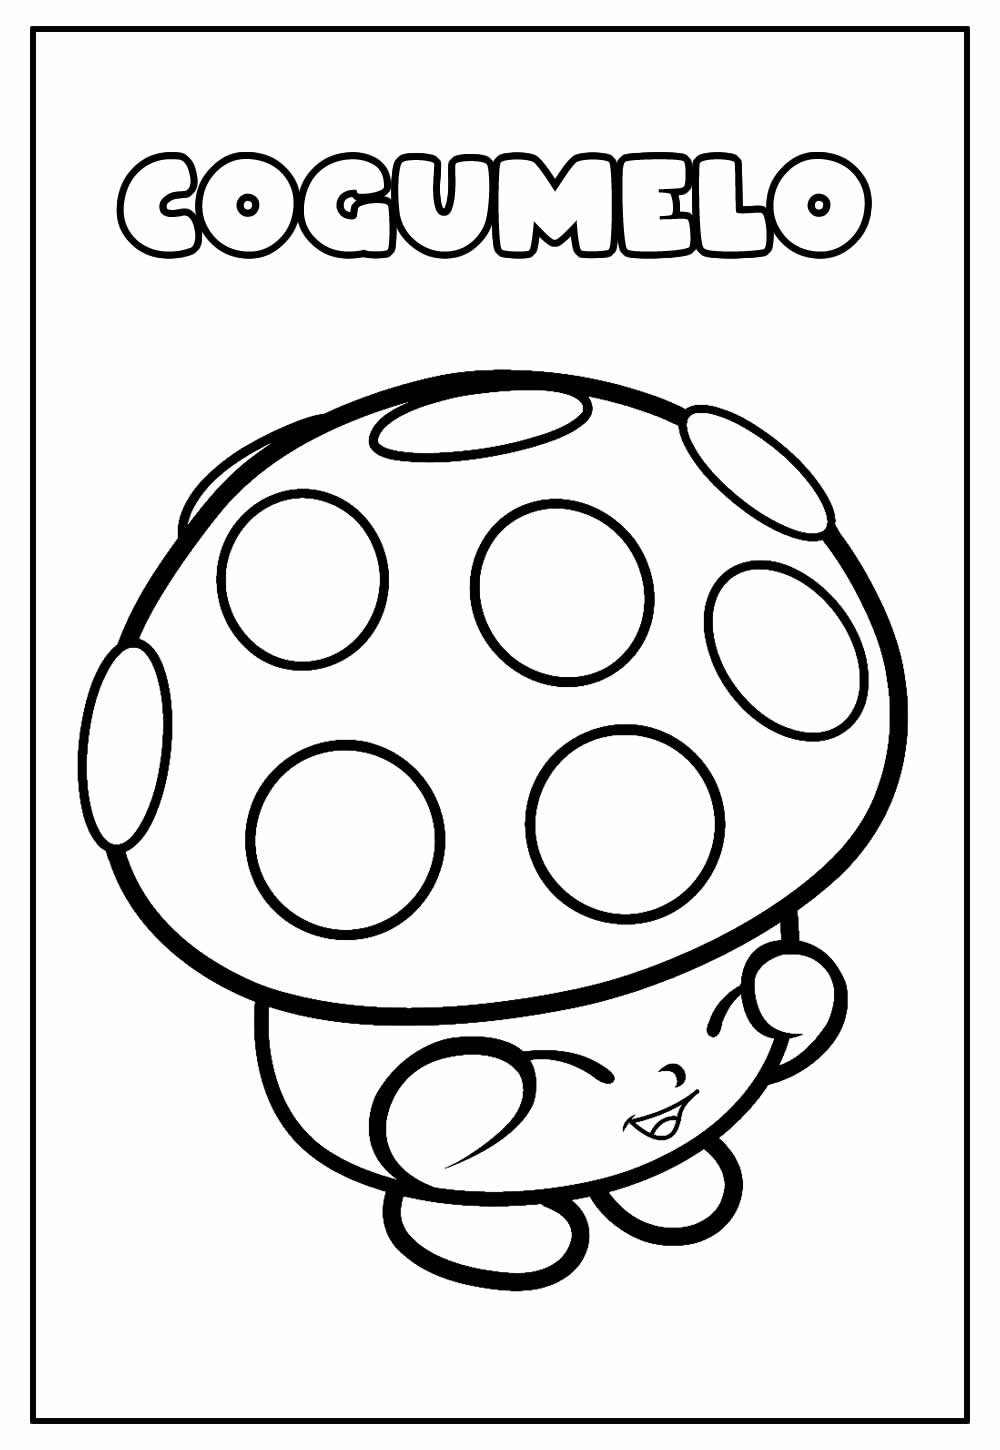 Desenho para colorir de Cogumelo - Imagem Educativa